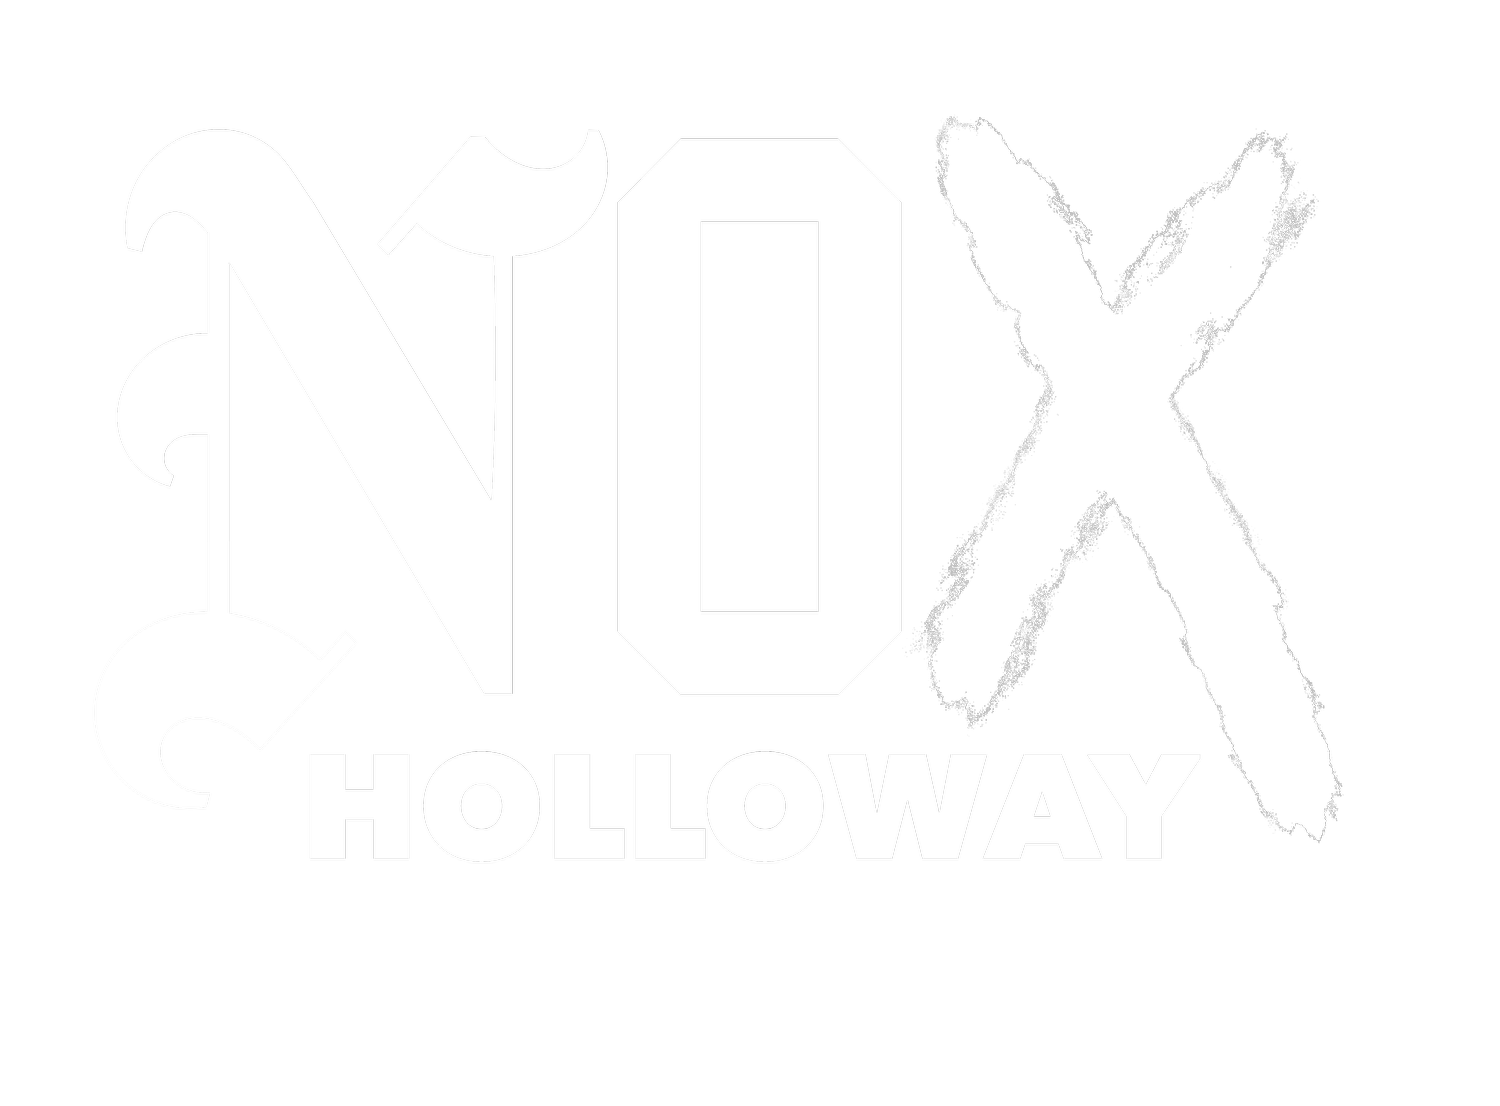 NOX HOLLOWAY